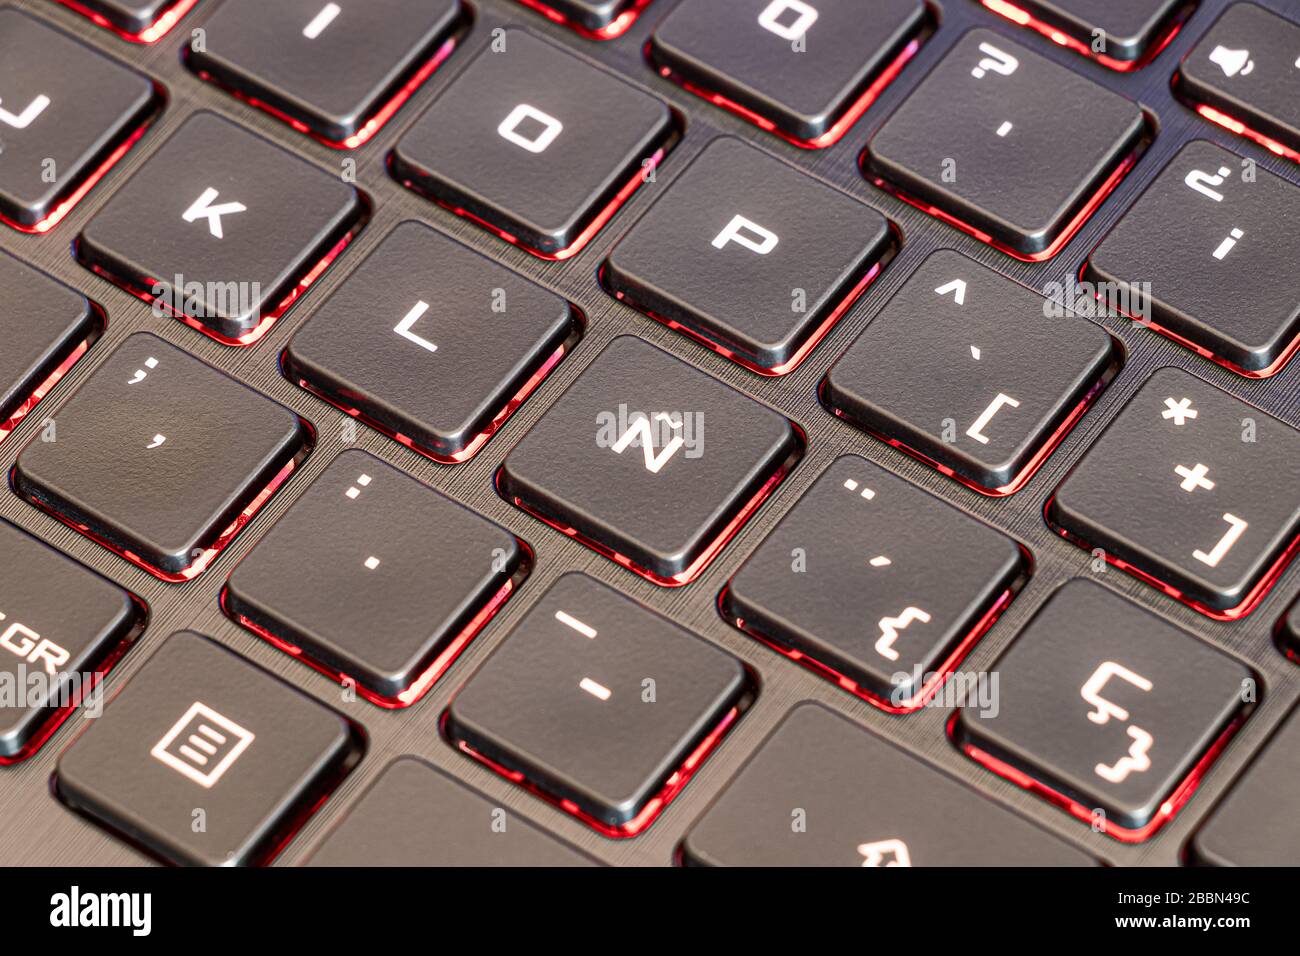 Ordinateur portable à clavier espagnol concentré dans la lettre  caractéristique Ñ de l'alphabet espagnol et avec des touches lumineuses  Photo Stock - Alamy